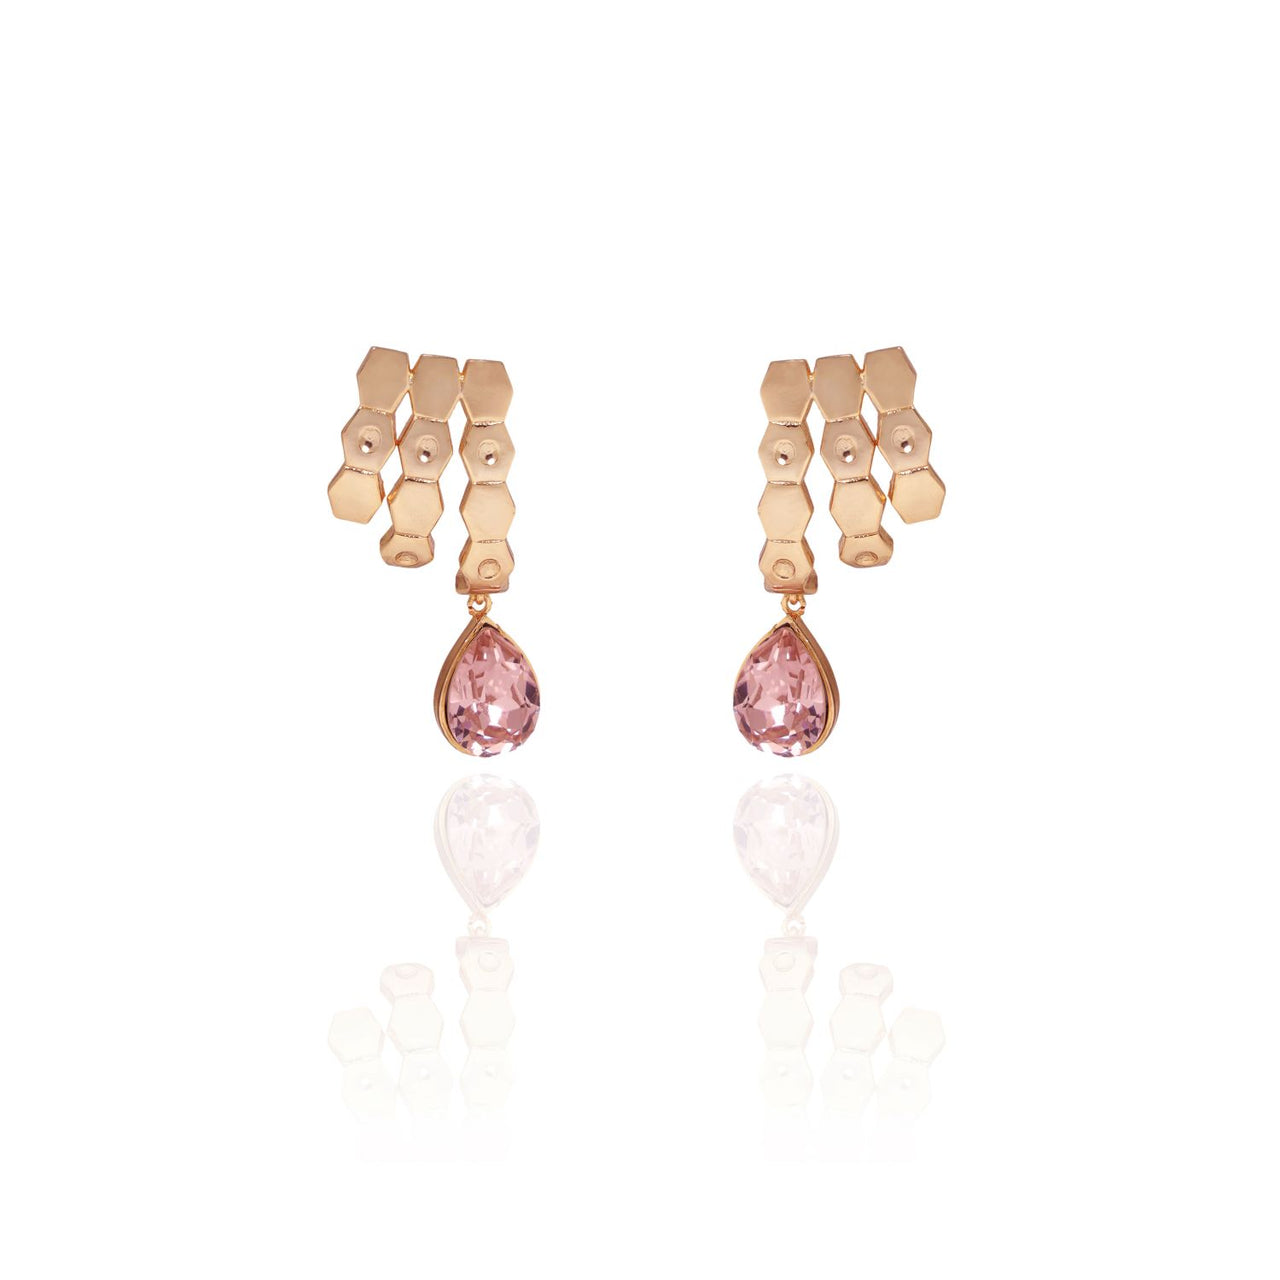 Pear-shaped drop earrings